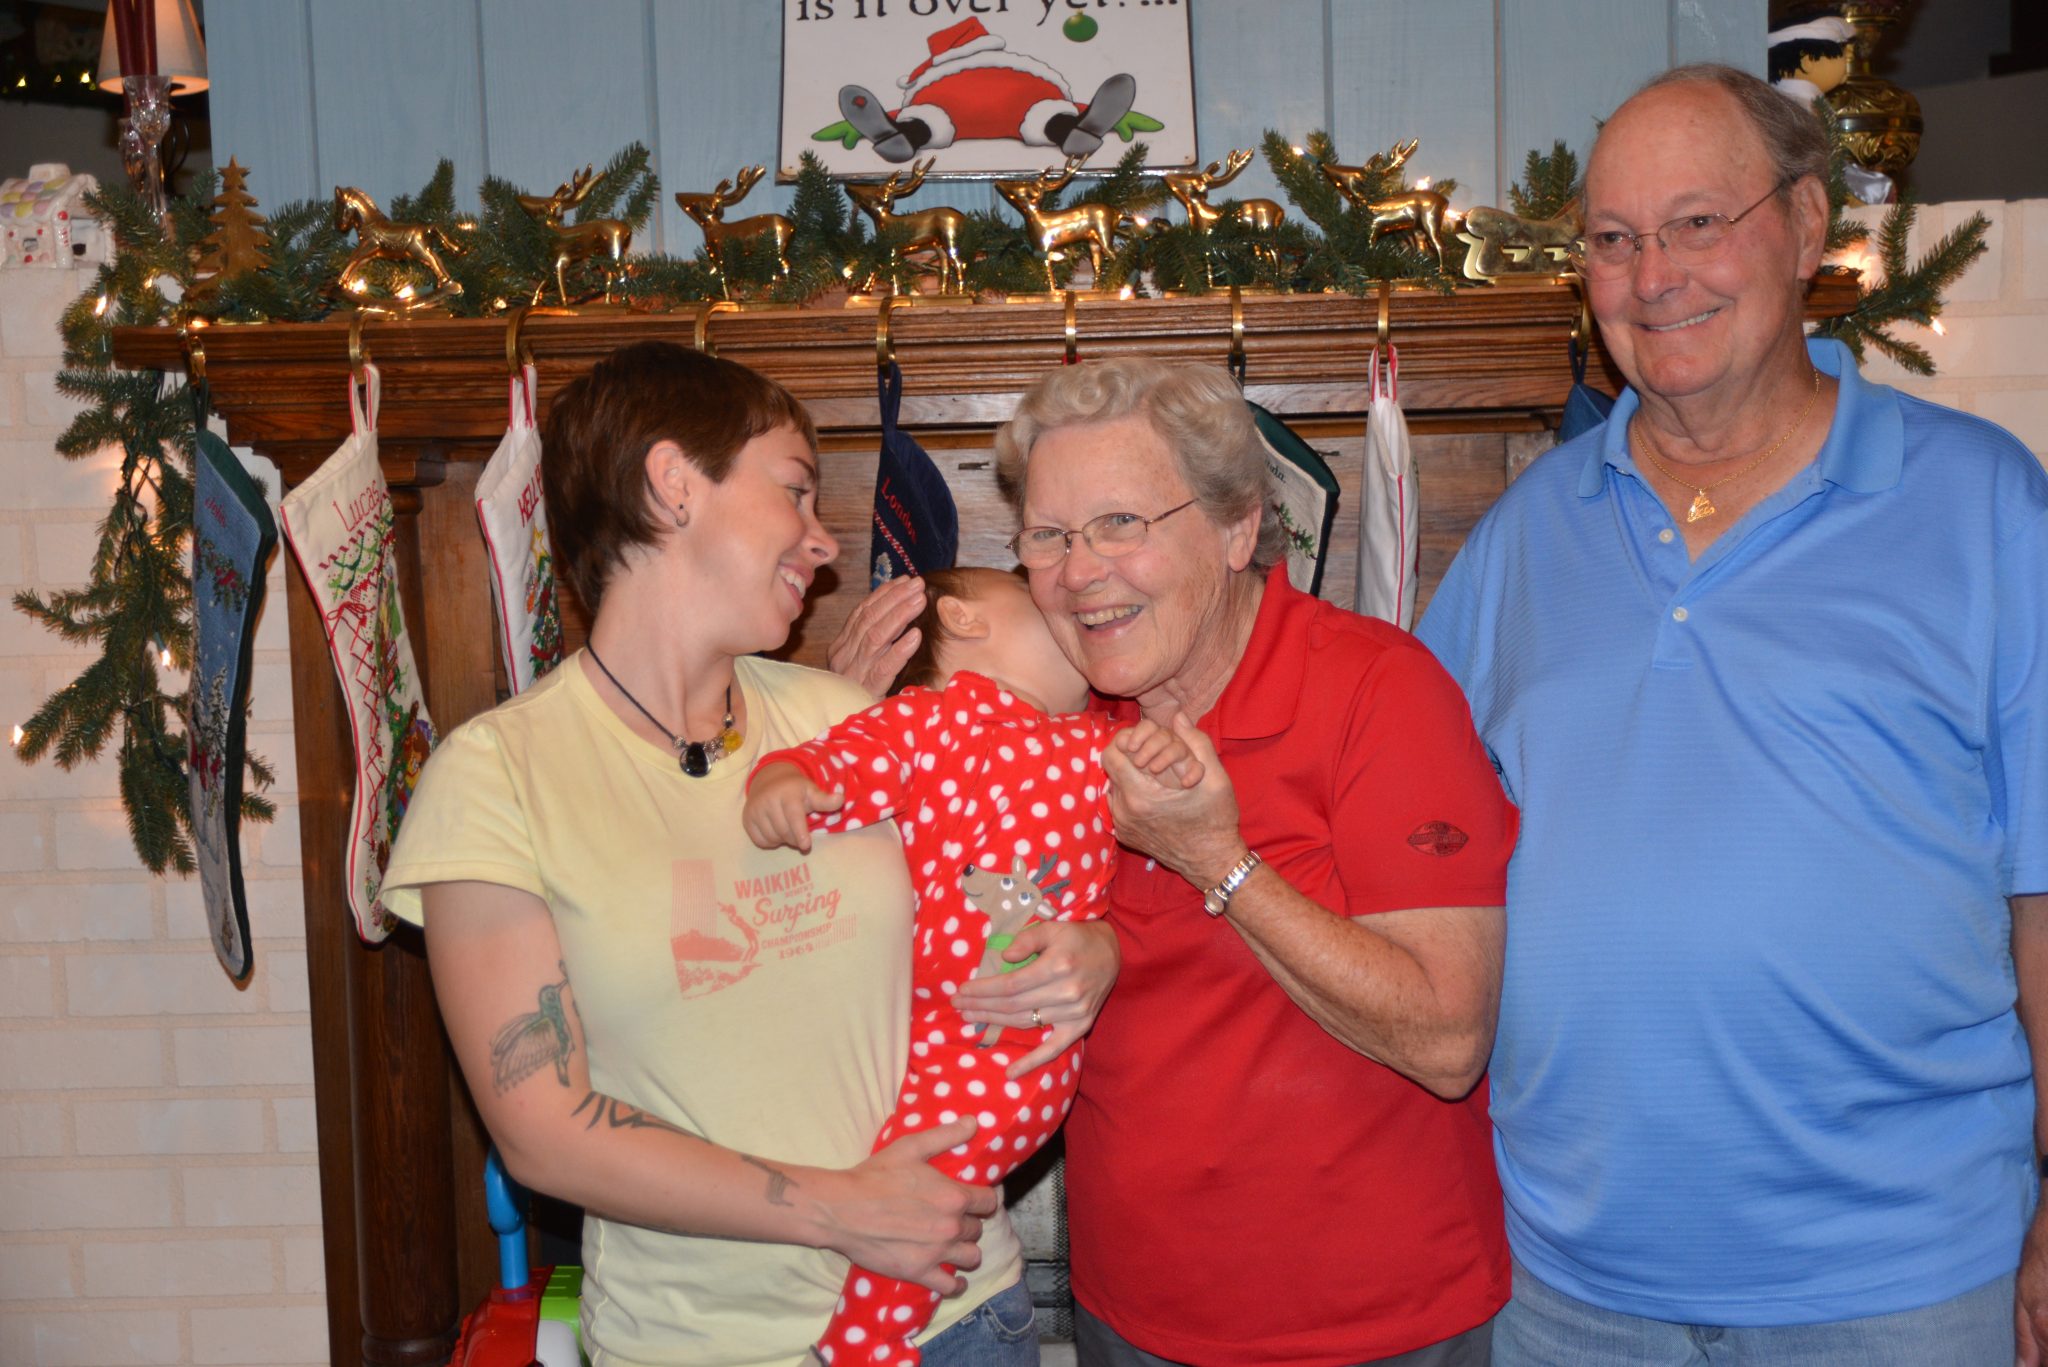 A special Christmas hug for Grandma!